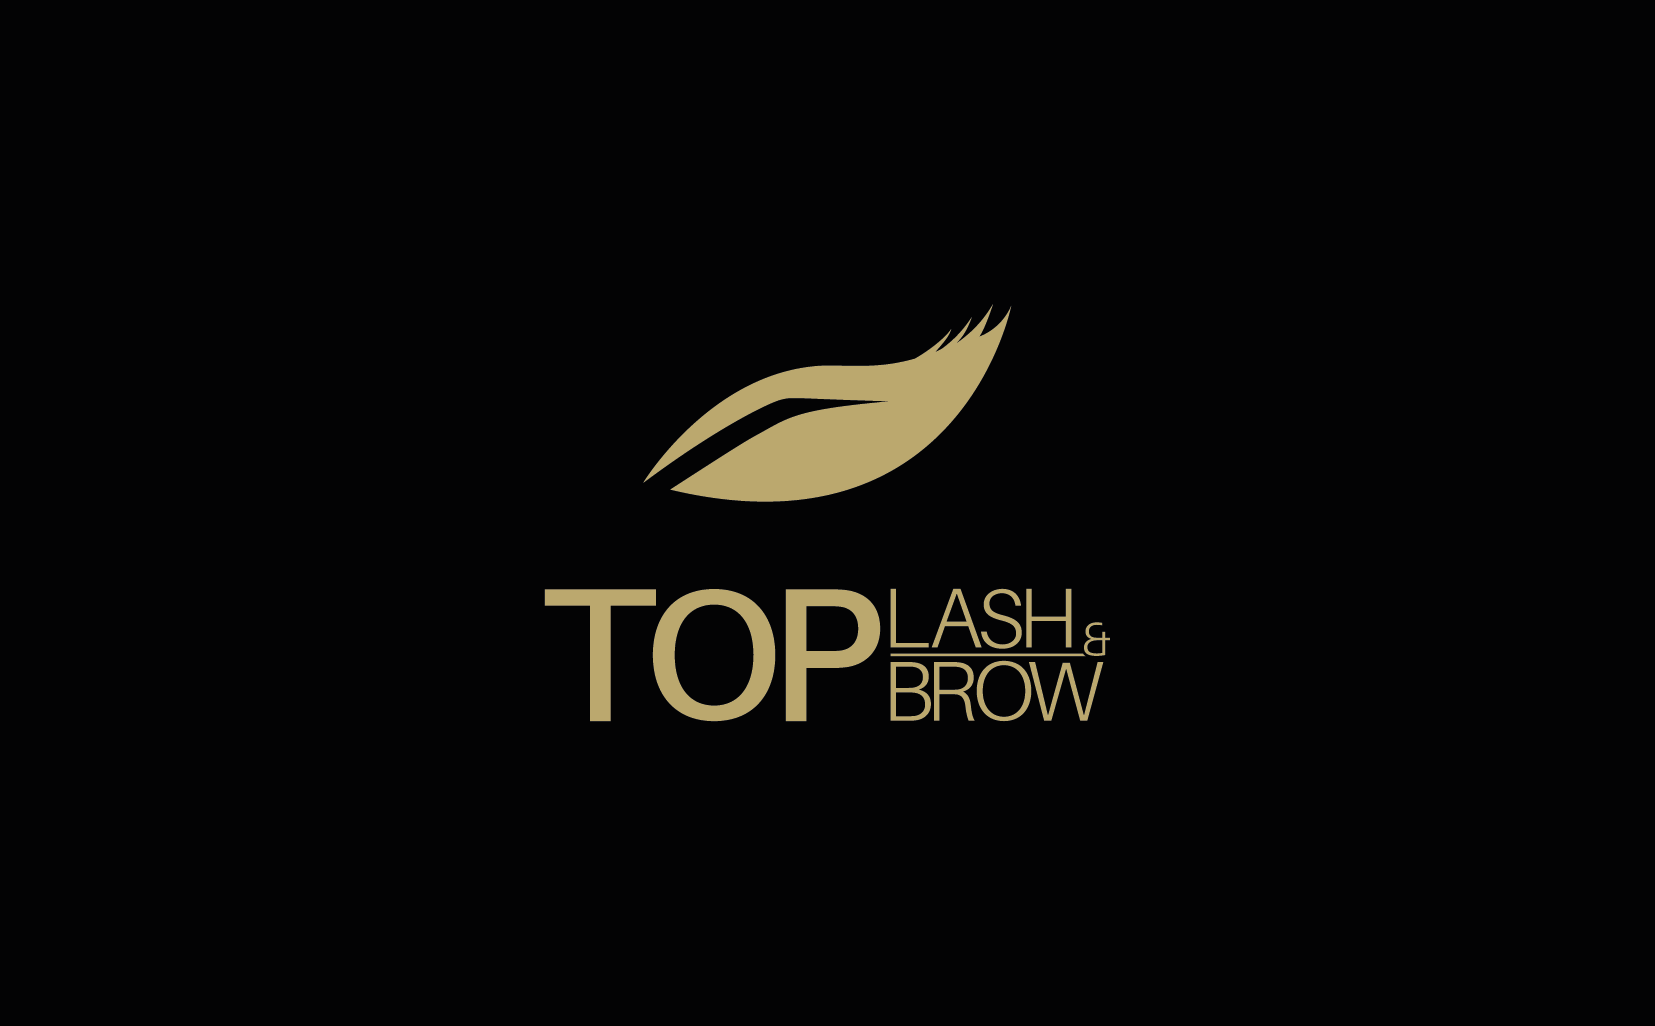 Top Lash & Brow